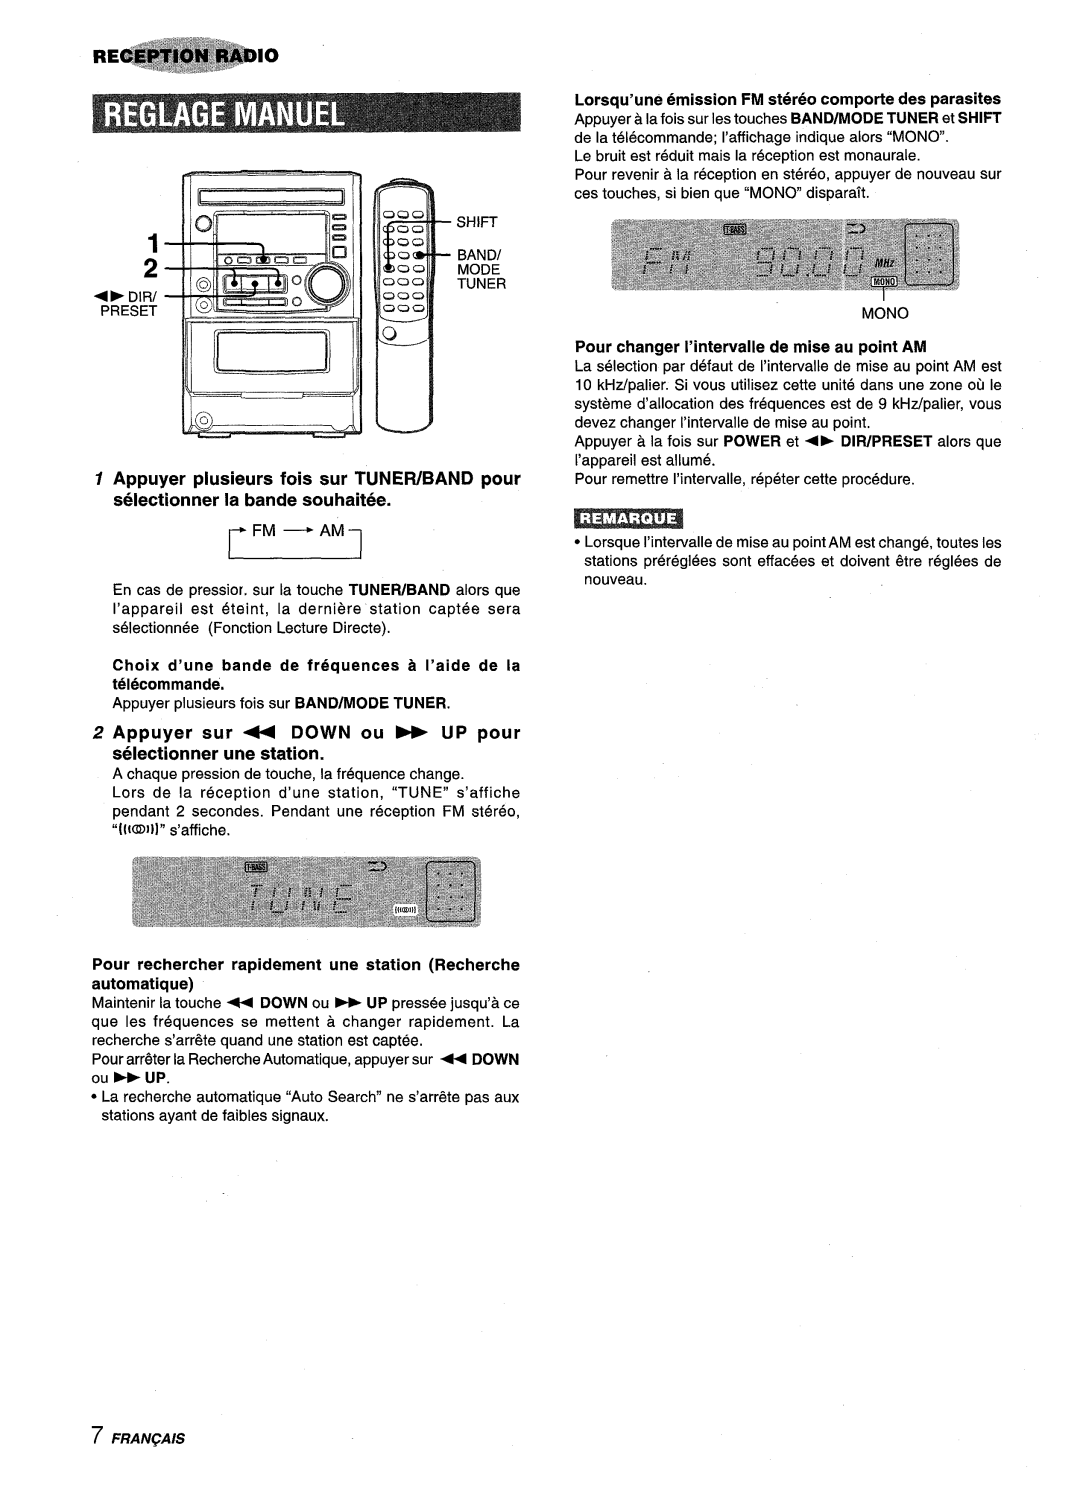 Aiwa XM-M25 manual Lorsqu’une emission FM stereo comporte des parasites 